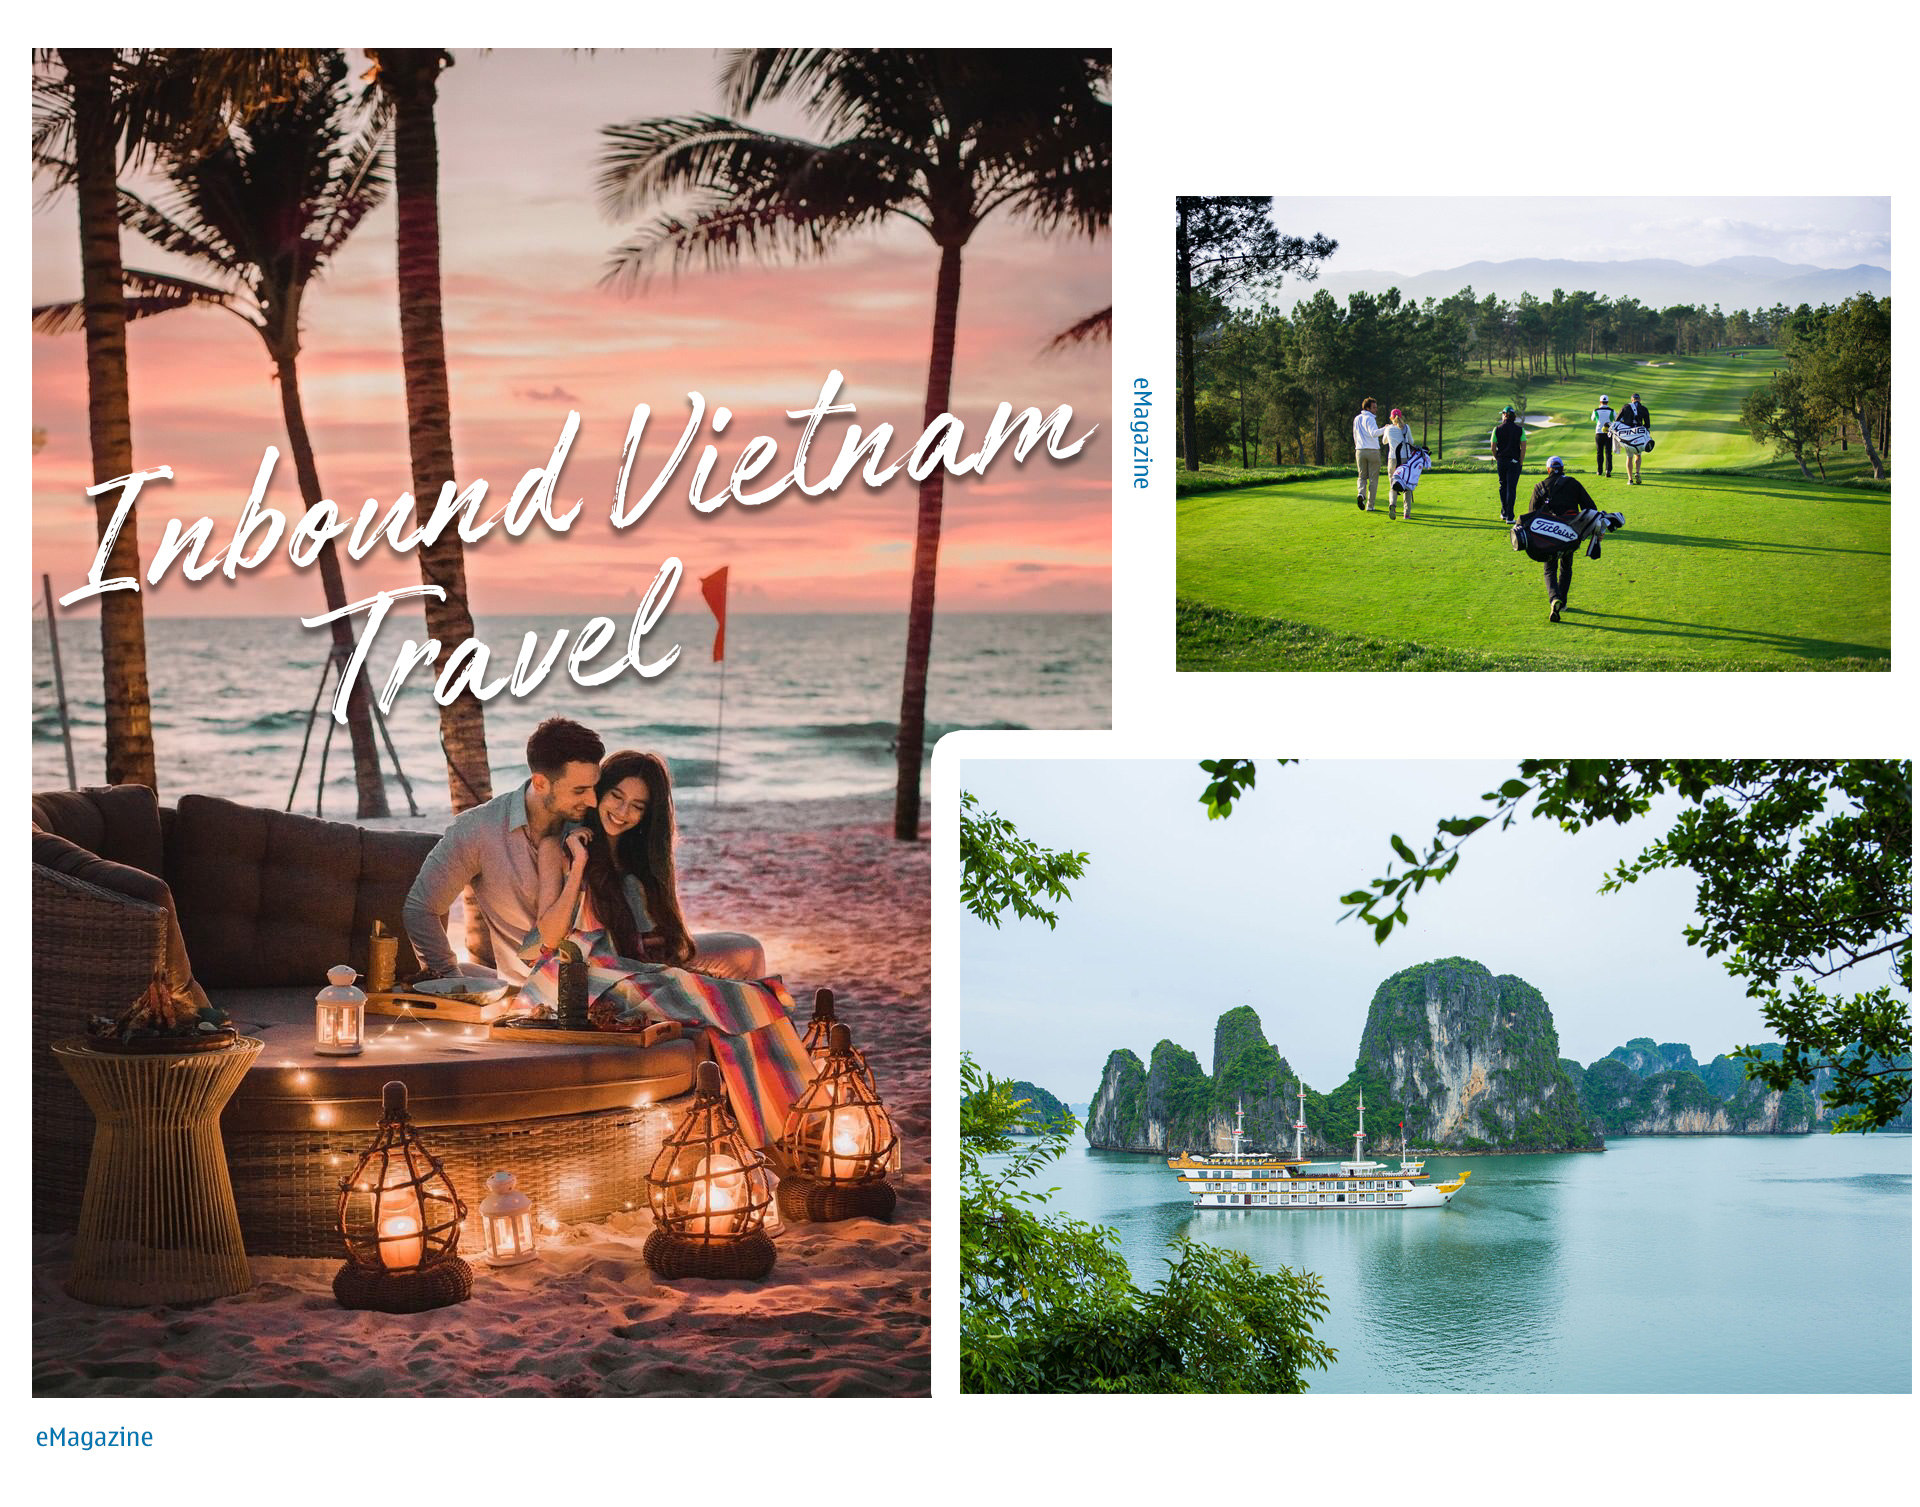 Inbound Vietnam Travel xây dựng hình ảnh một Việt Nam an toàn với tất cả du khách trên thế giới - 3